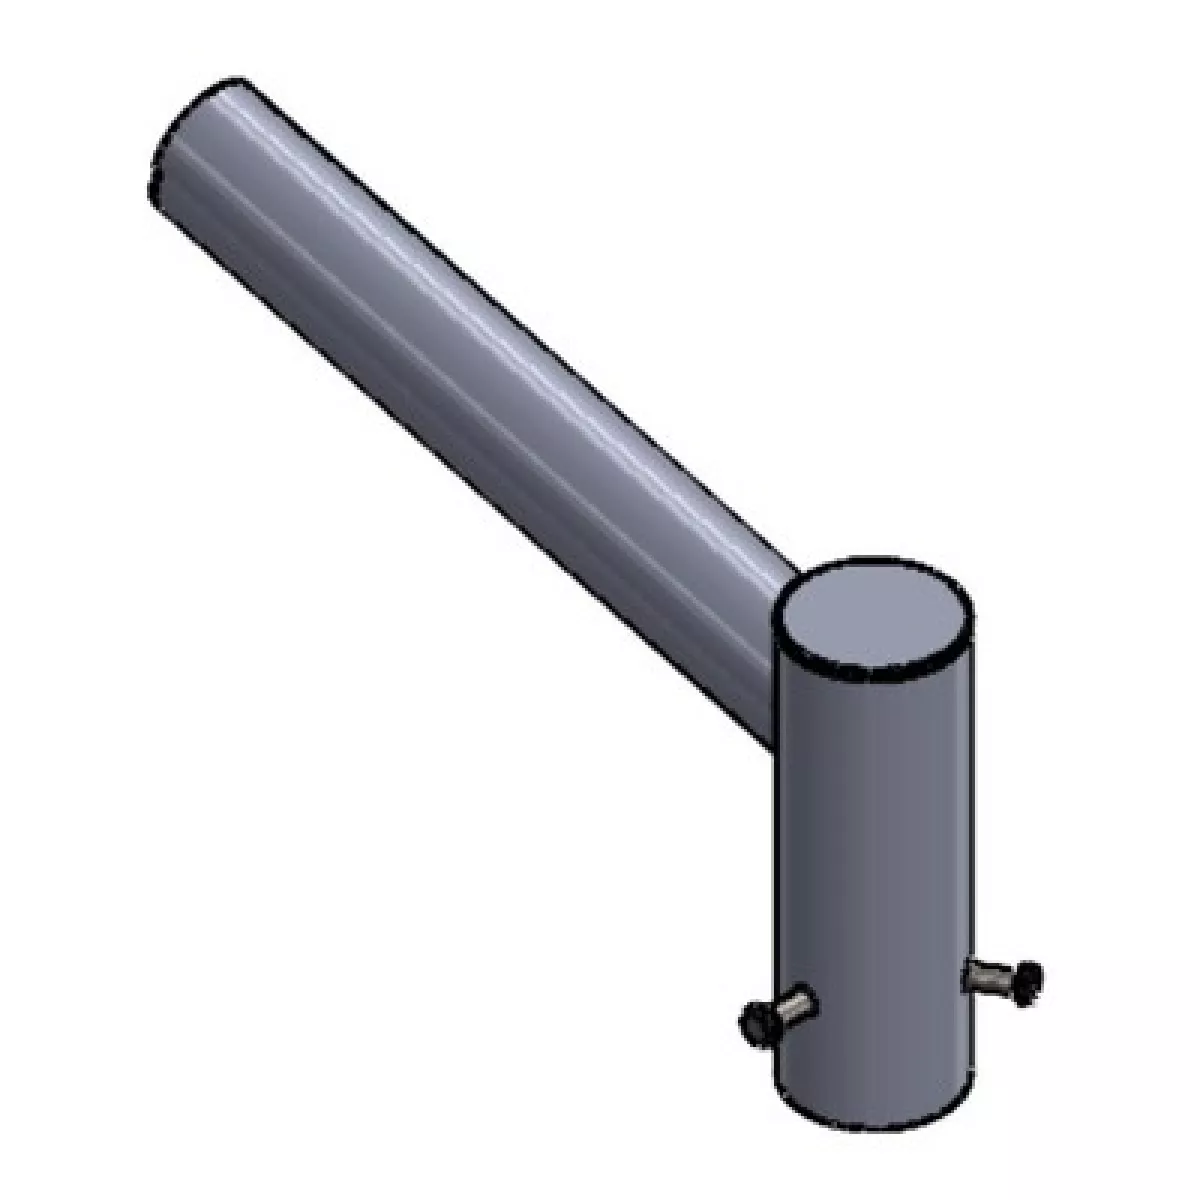 #2 - Beslag til gadelampe - Ø60mm / Ø70mm, grå pulverlakeret